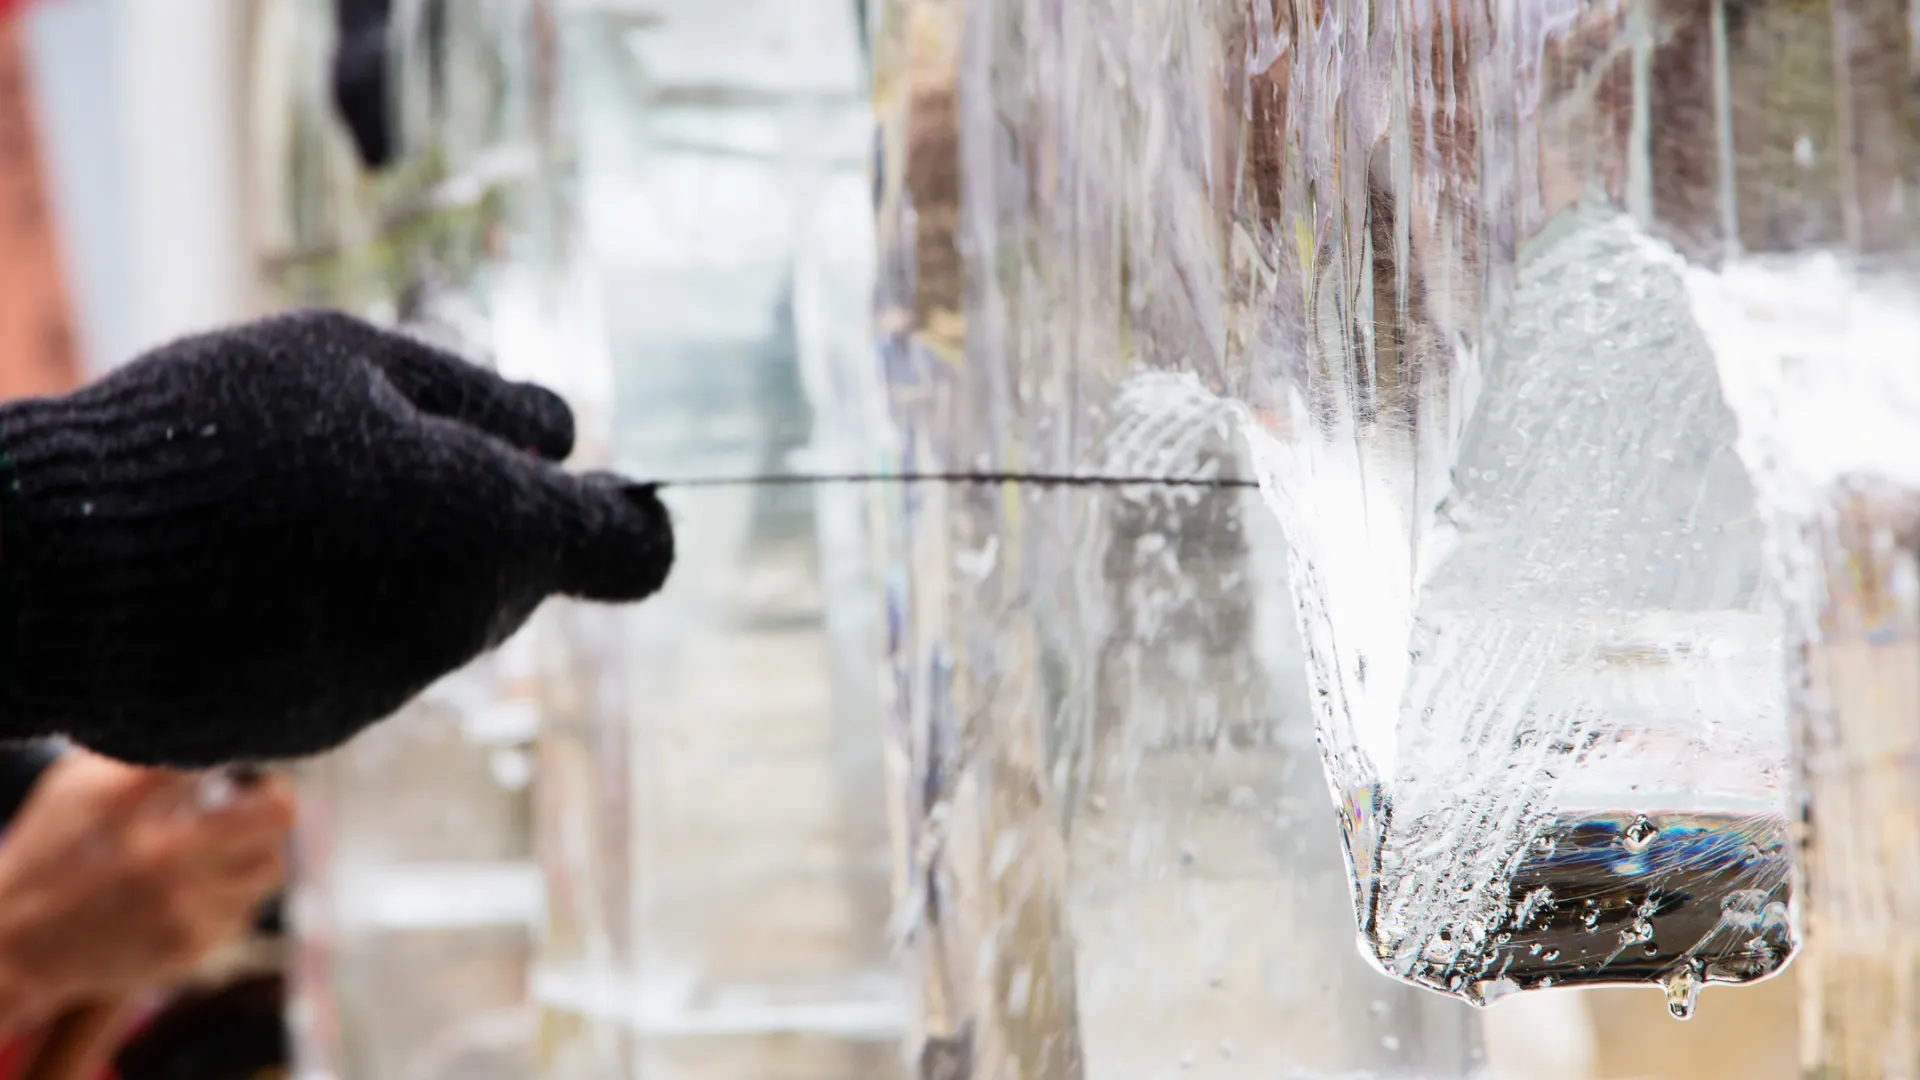 Ледяной городок должны оформить до 10 декабря. Фото: ponsulak/Shutterstock/Fotodom